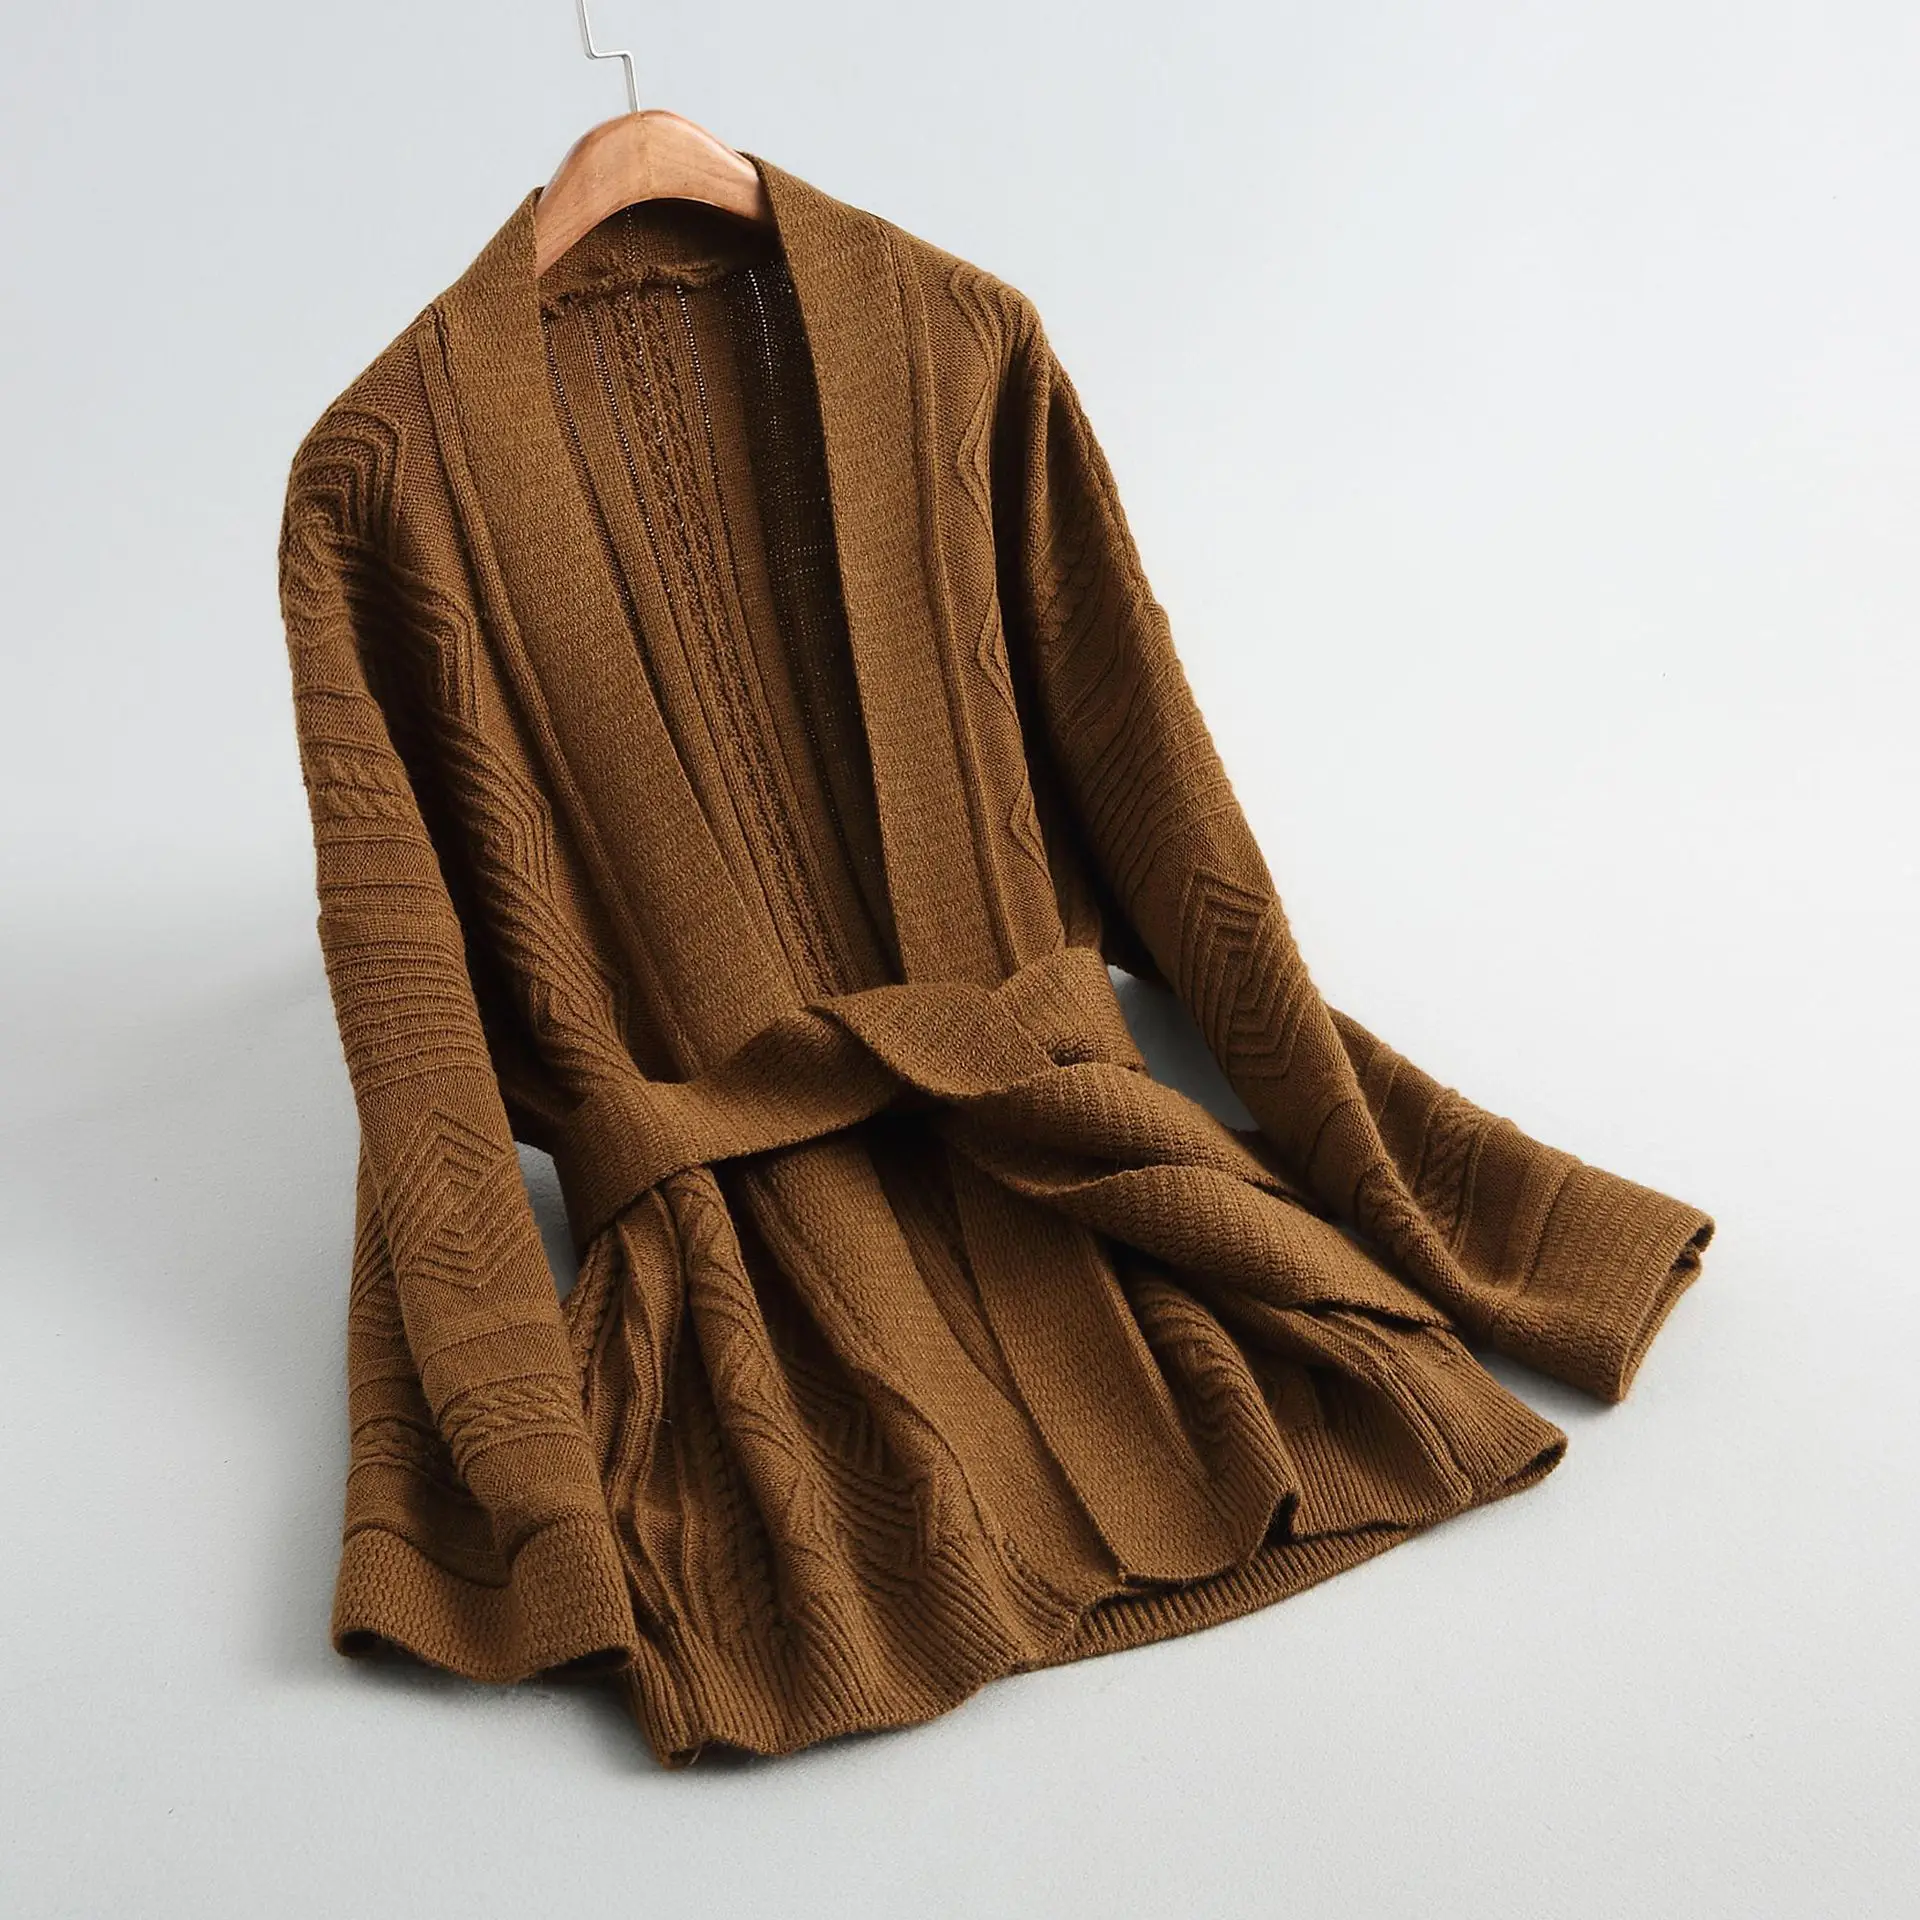 INNASOFAN кардиган женский Осень-зима вязаный свитер Европейская мода элегантный кардиган сплошной цвет с поясом